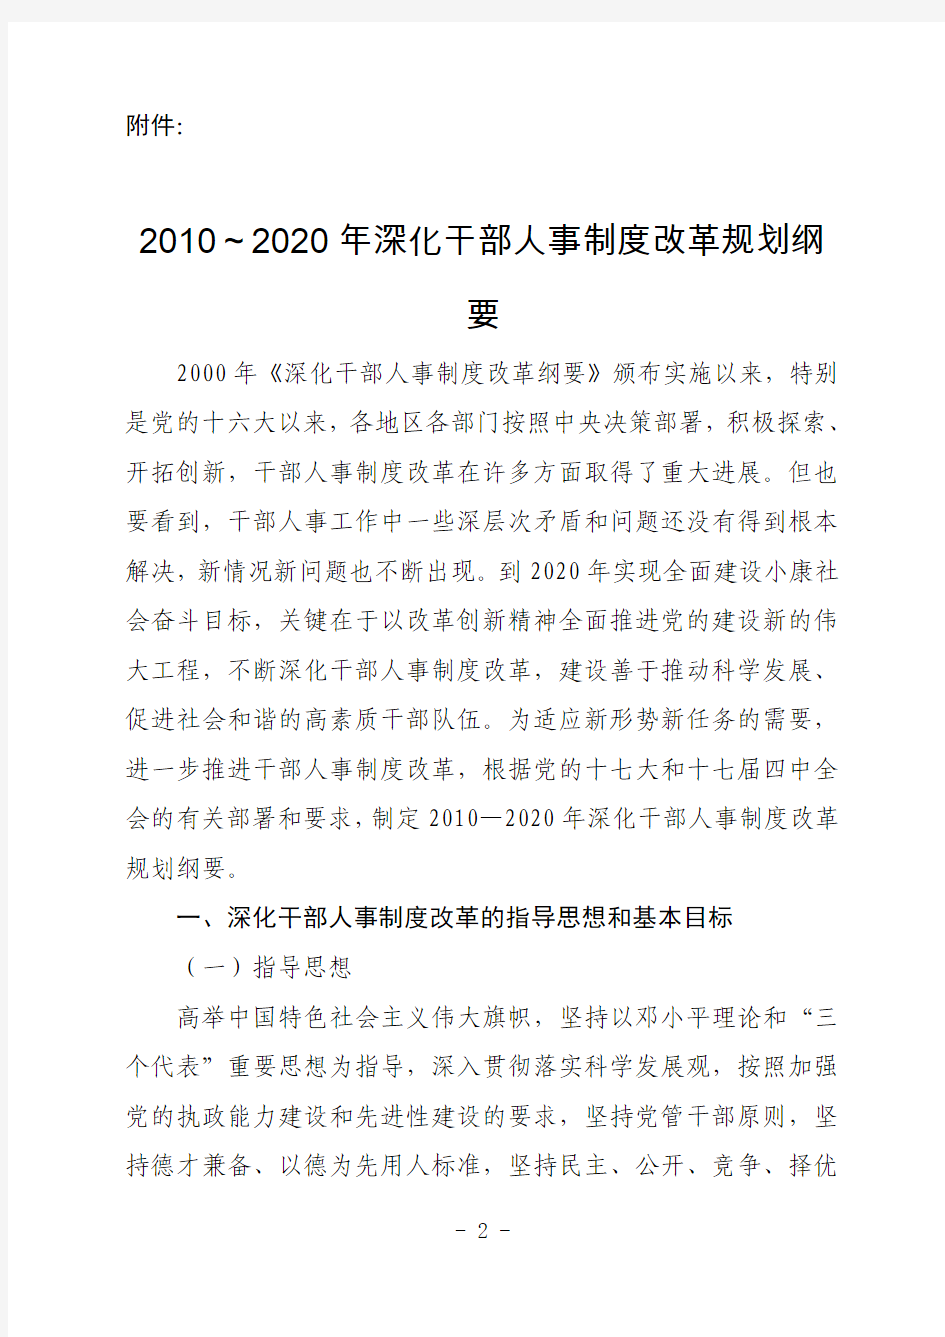 2010-2020年深化干部人事制度改革规划纲要(中央办公厅)